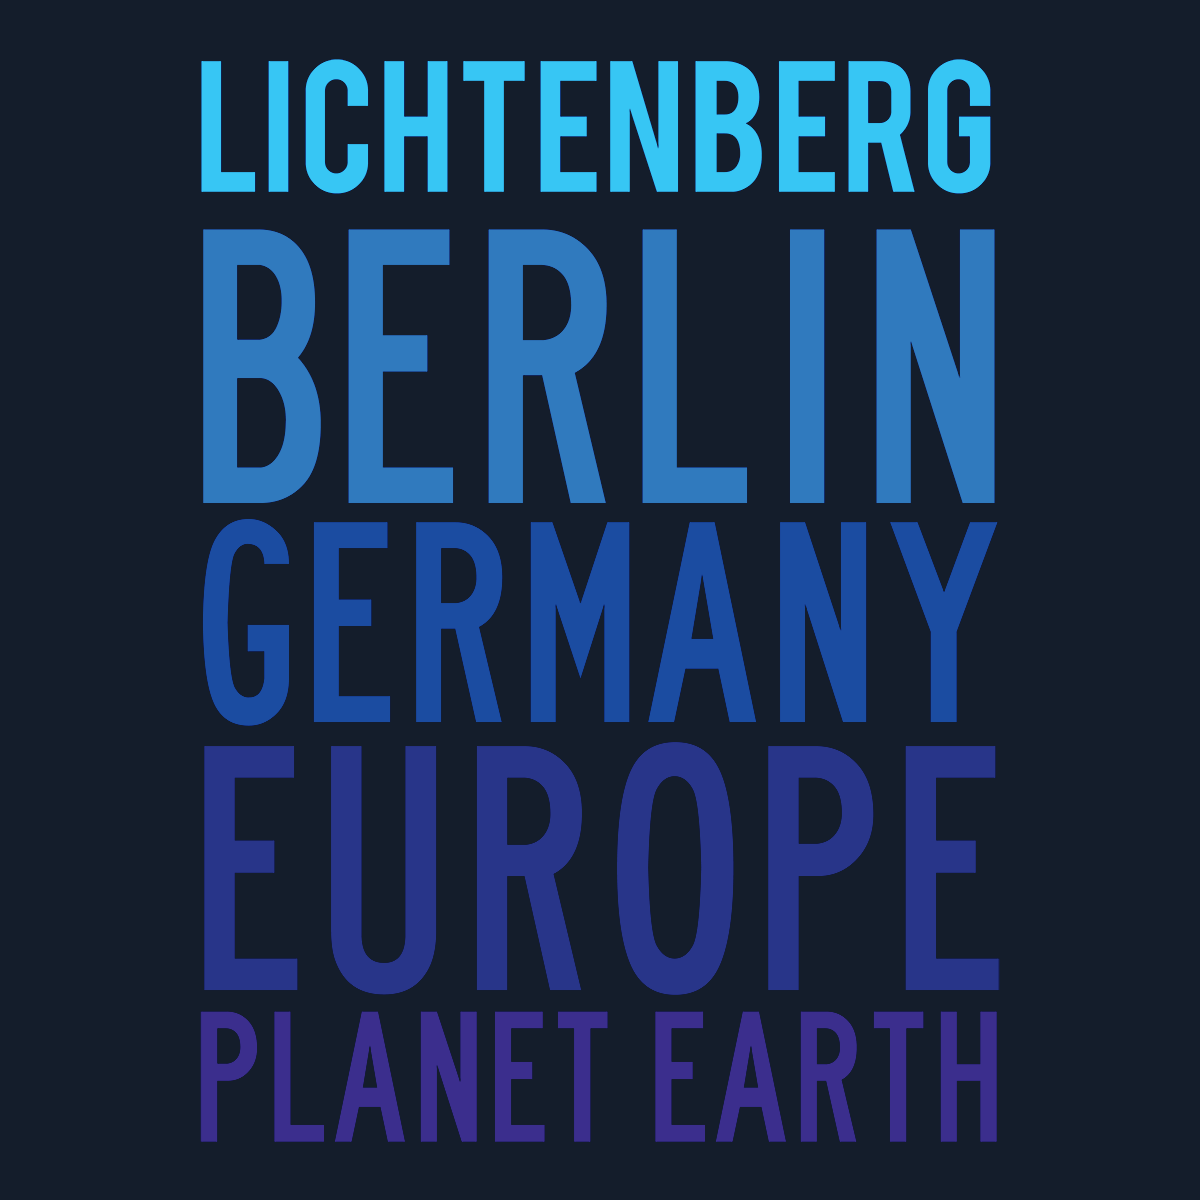 Lichtenberg Planet Earth